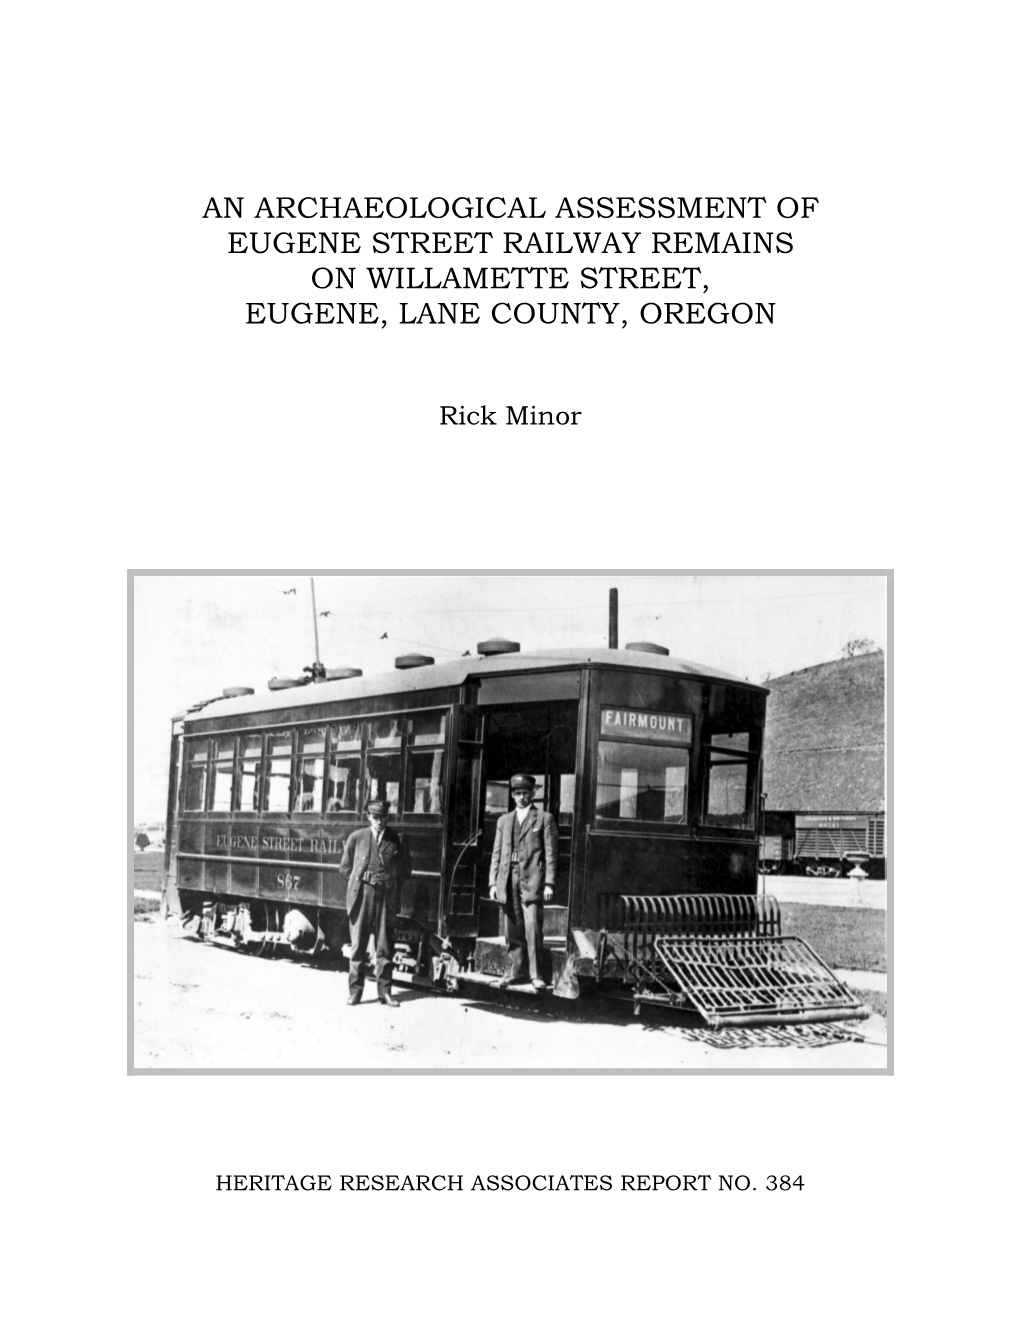 An Archaeological Assessment of Eugene Street Railway Remains on Willamette Street, Eugene, Lane County, Oregon